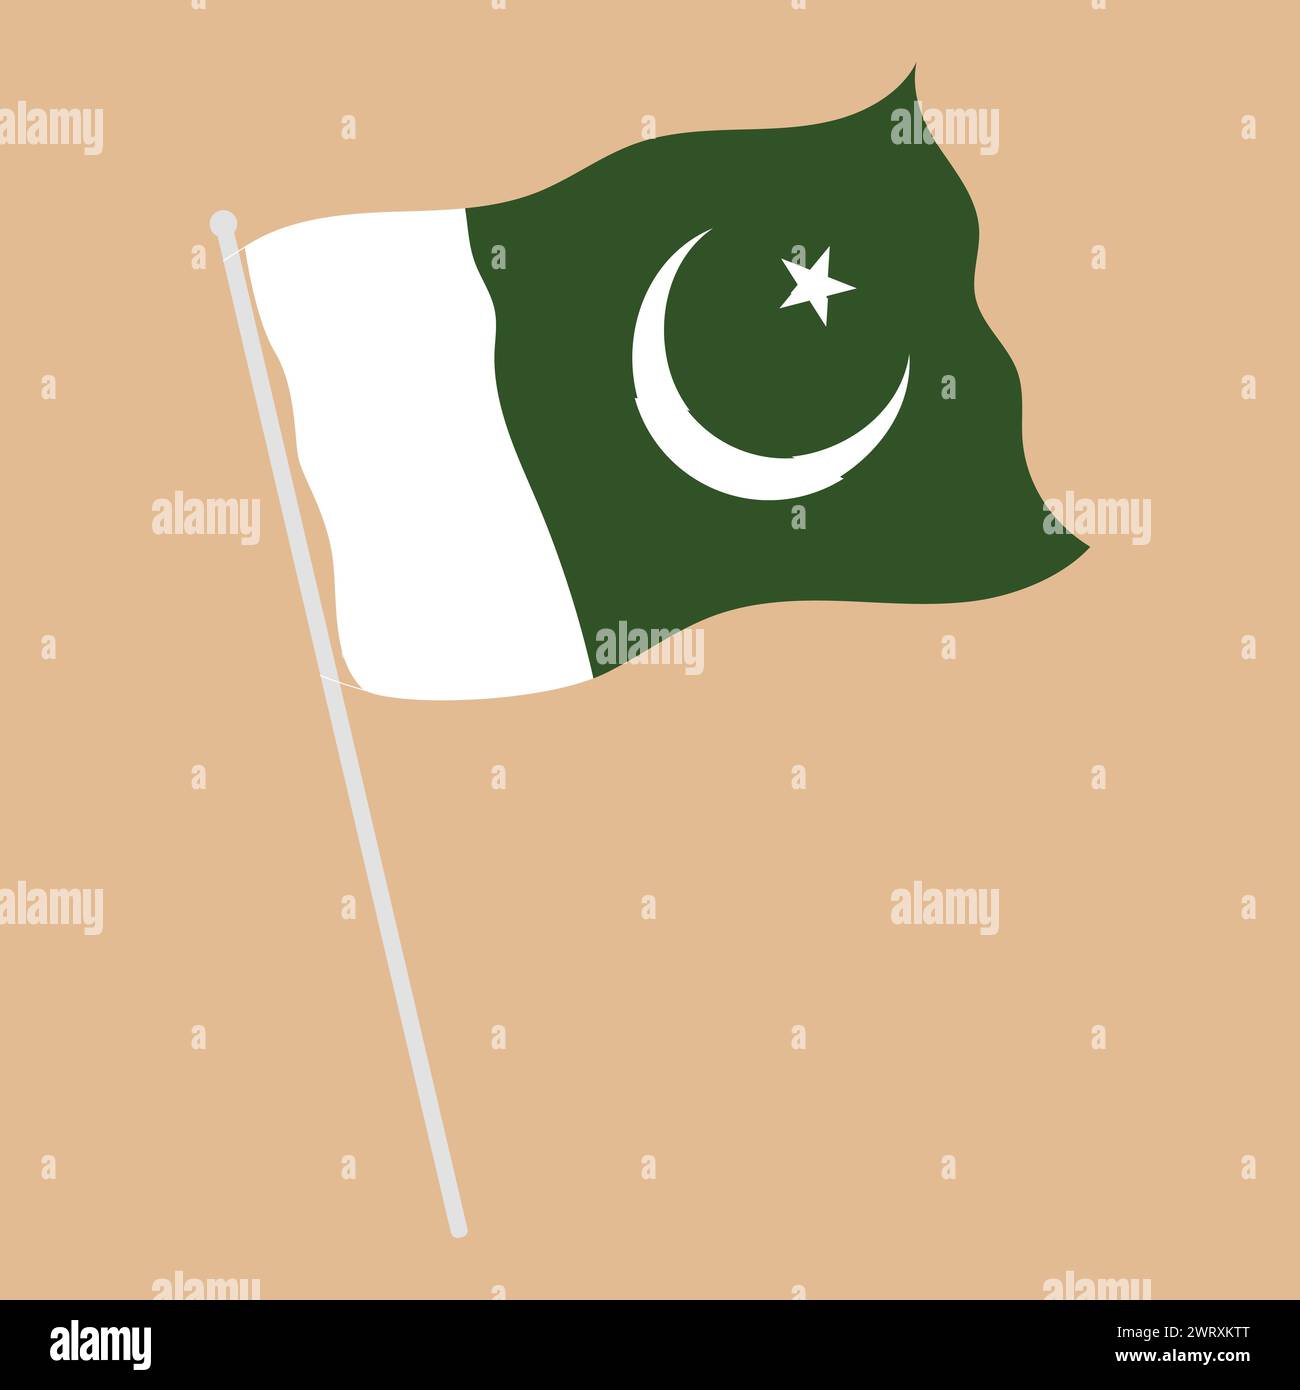 Pakistan drapeau pays illustration vectorielle drapeau Pakistan illustration d'icône d'ondulation Illustration de Vecteur